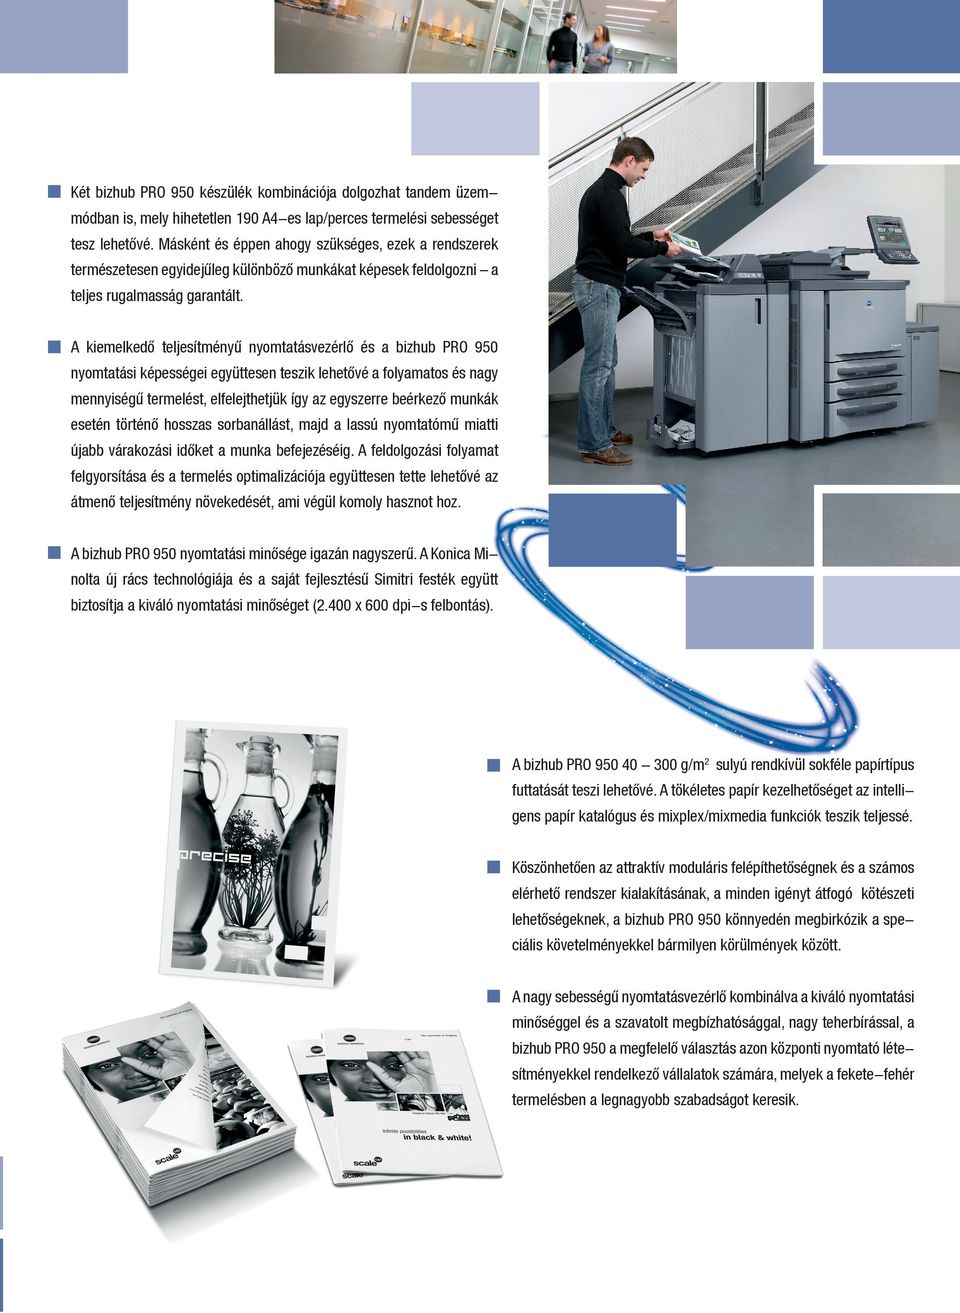 A kiemelkedő teljesítményű nyomtatásvezérlő és a bizhub PRO 950 nyomtatási képességei együttesen teszik lehetővé a folyamatos és nagy mennyiségű termelést, elfelejthetjük így az egyszerre beérkező